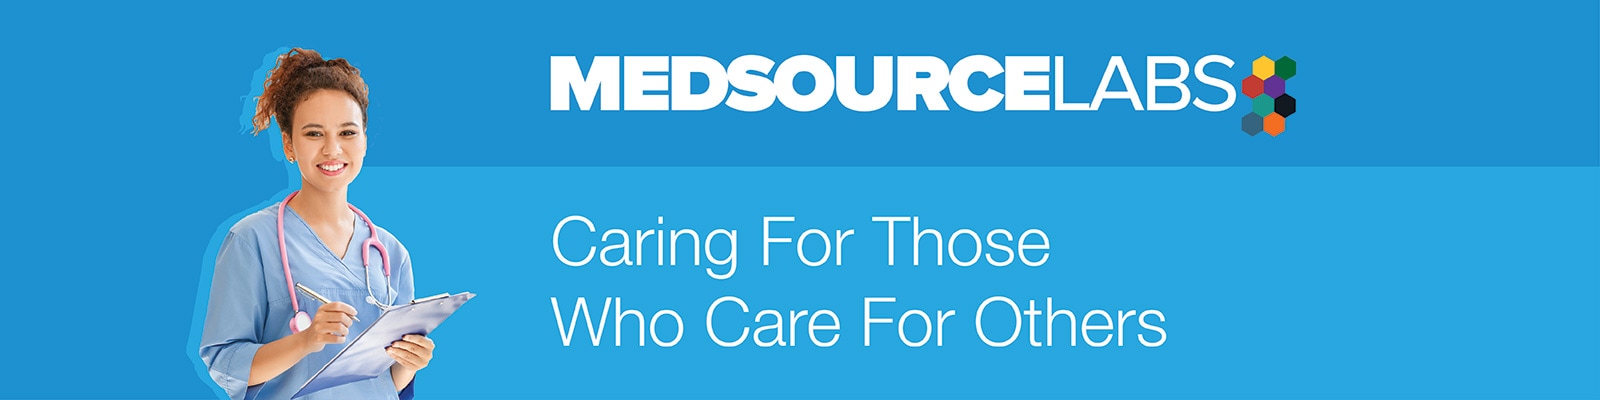 MedSource Labs - Henry Schein Medical